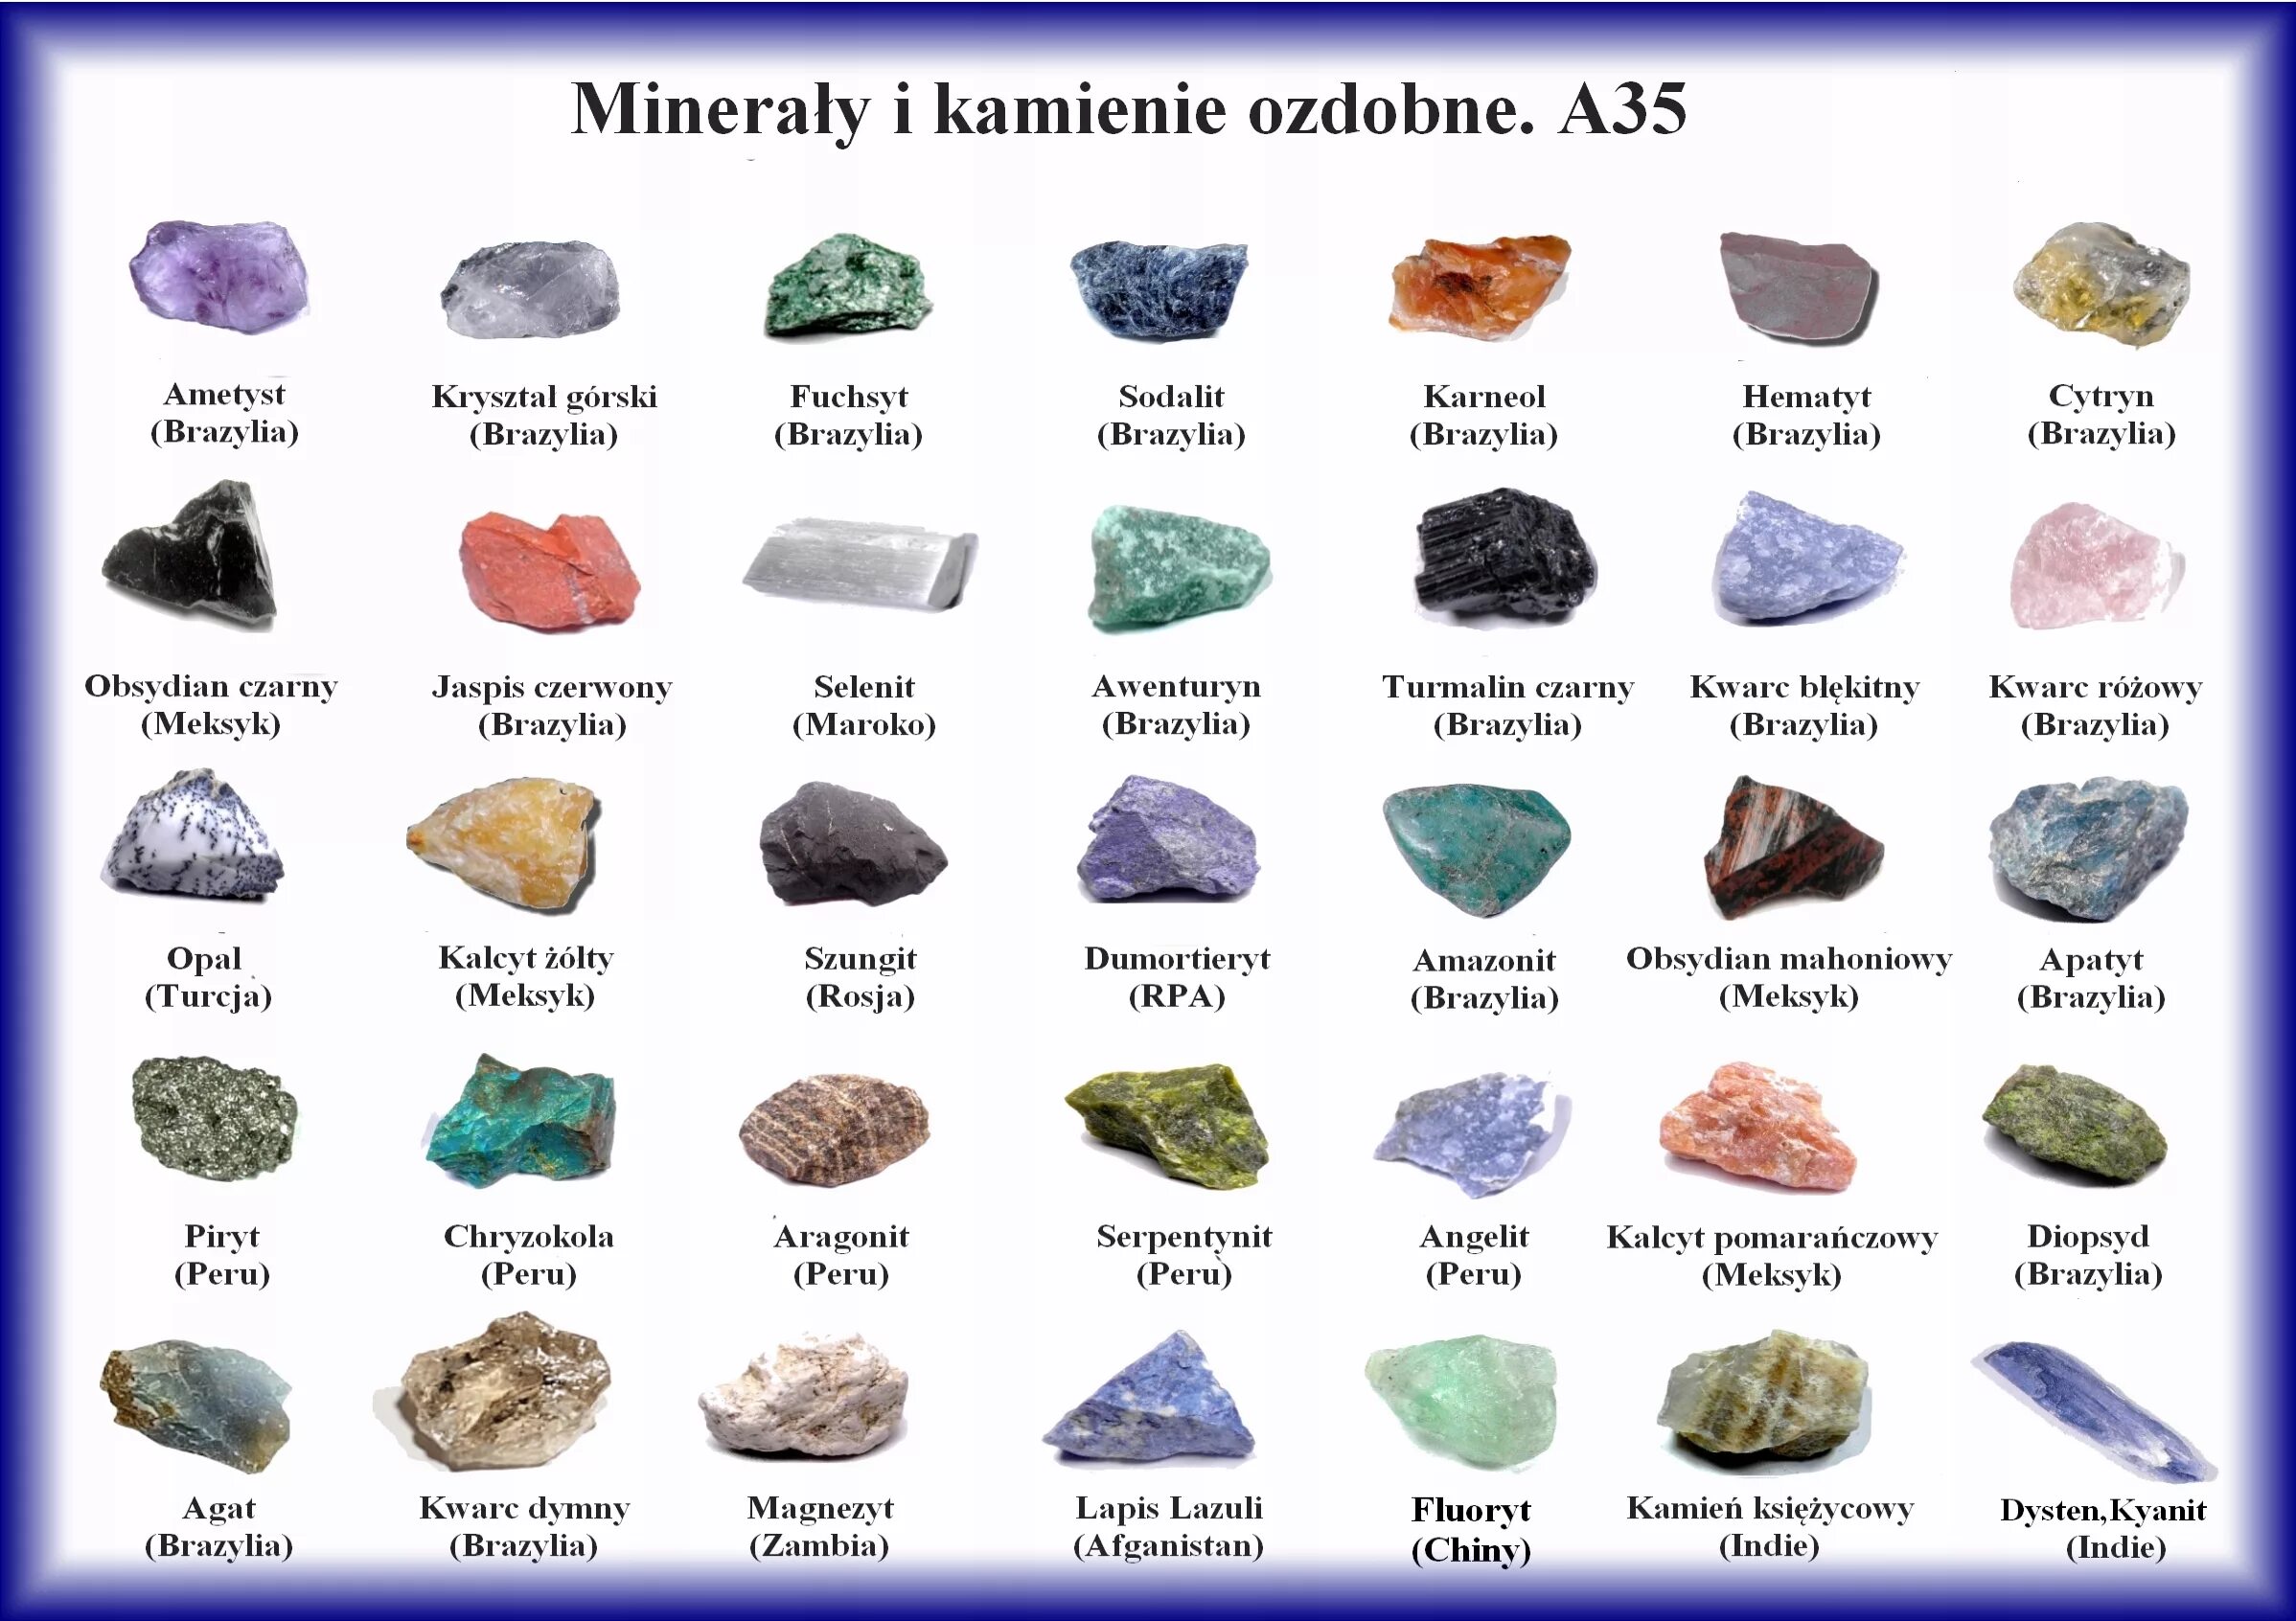 Какие виды камня бывают. Справочник минералы, горные породы, драгоценные камни. Название всех камней и минералов. Полудрагоценные минералы. Природные камни названия.